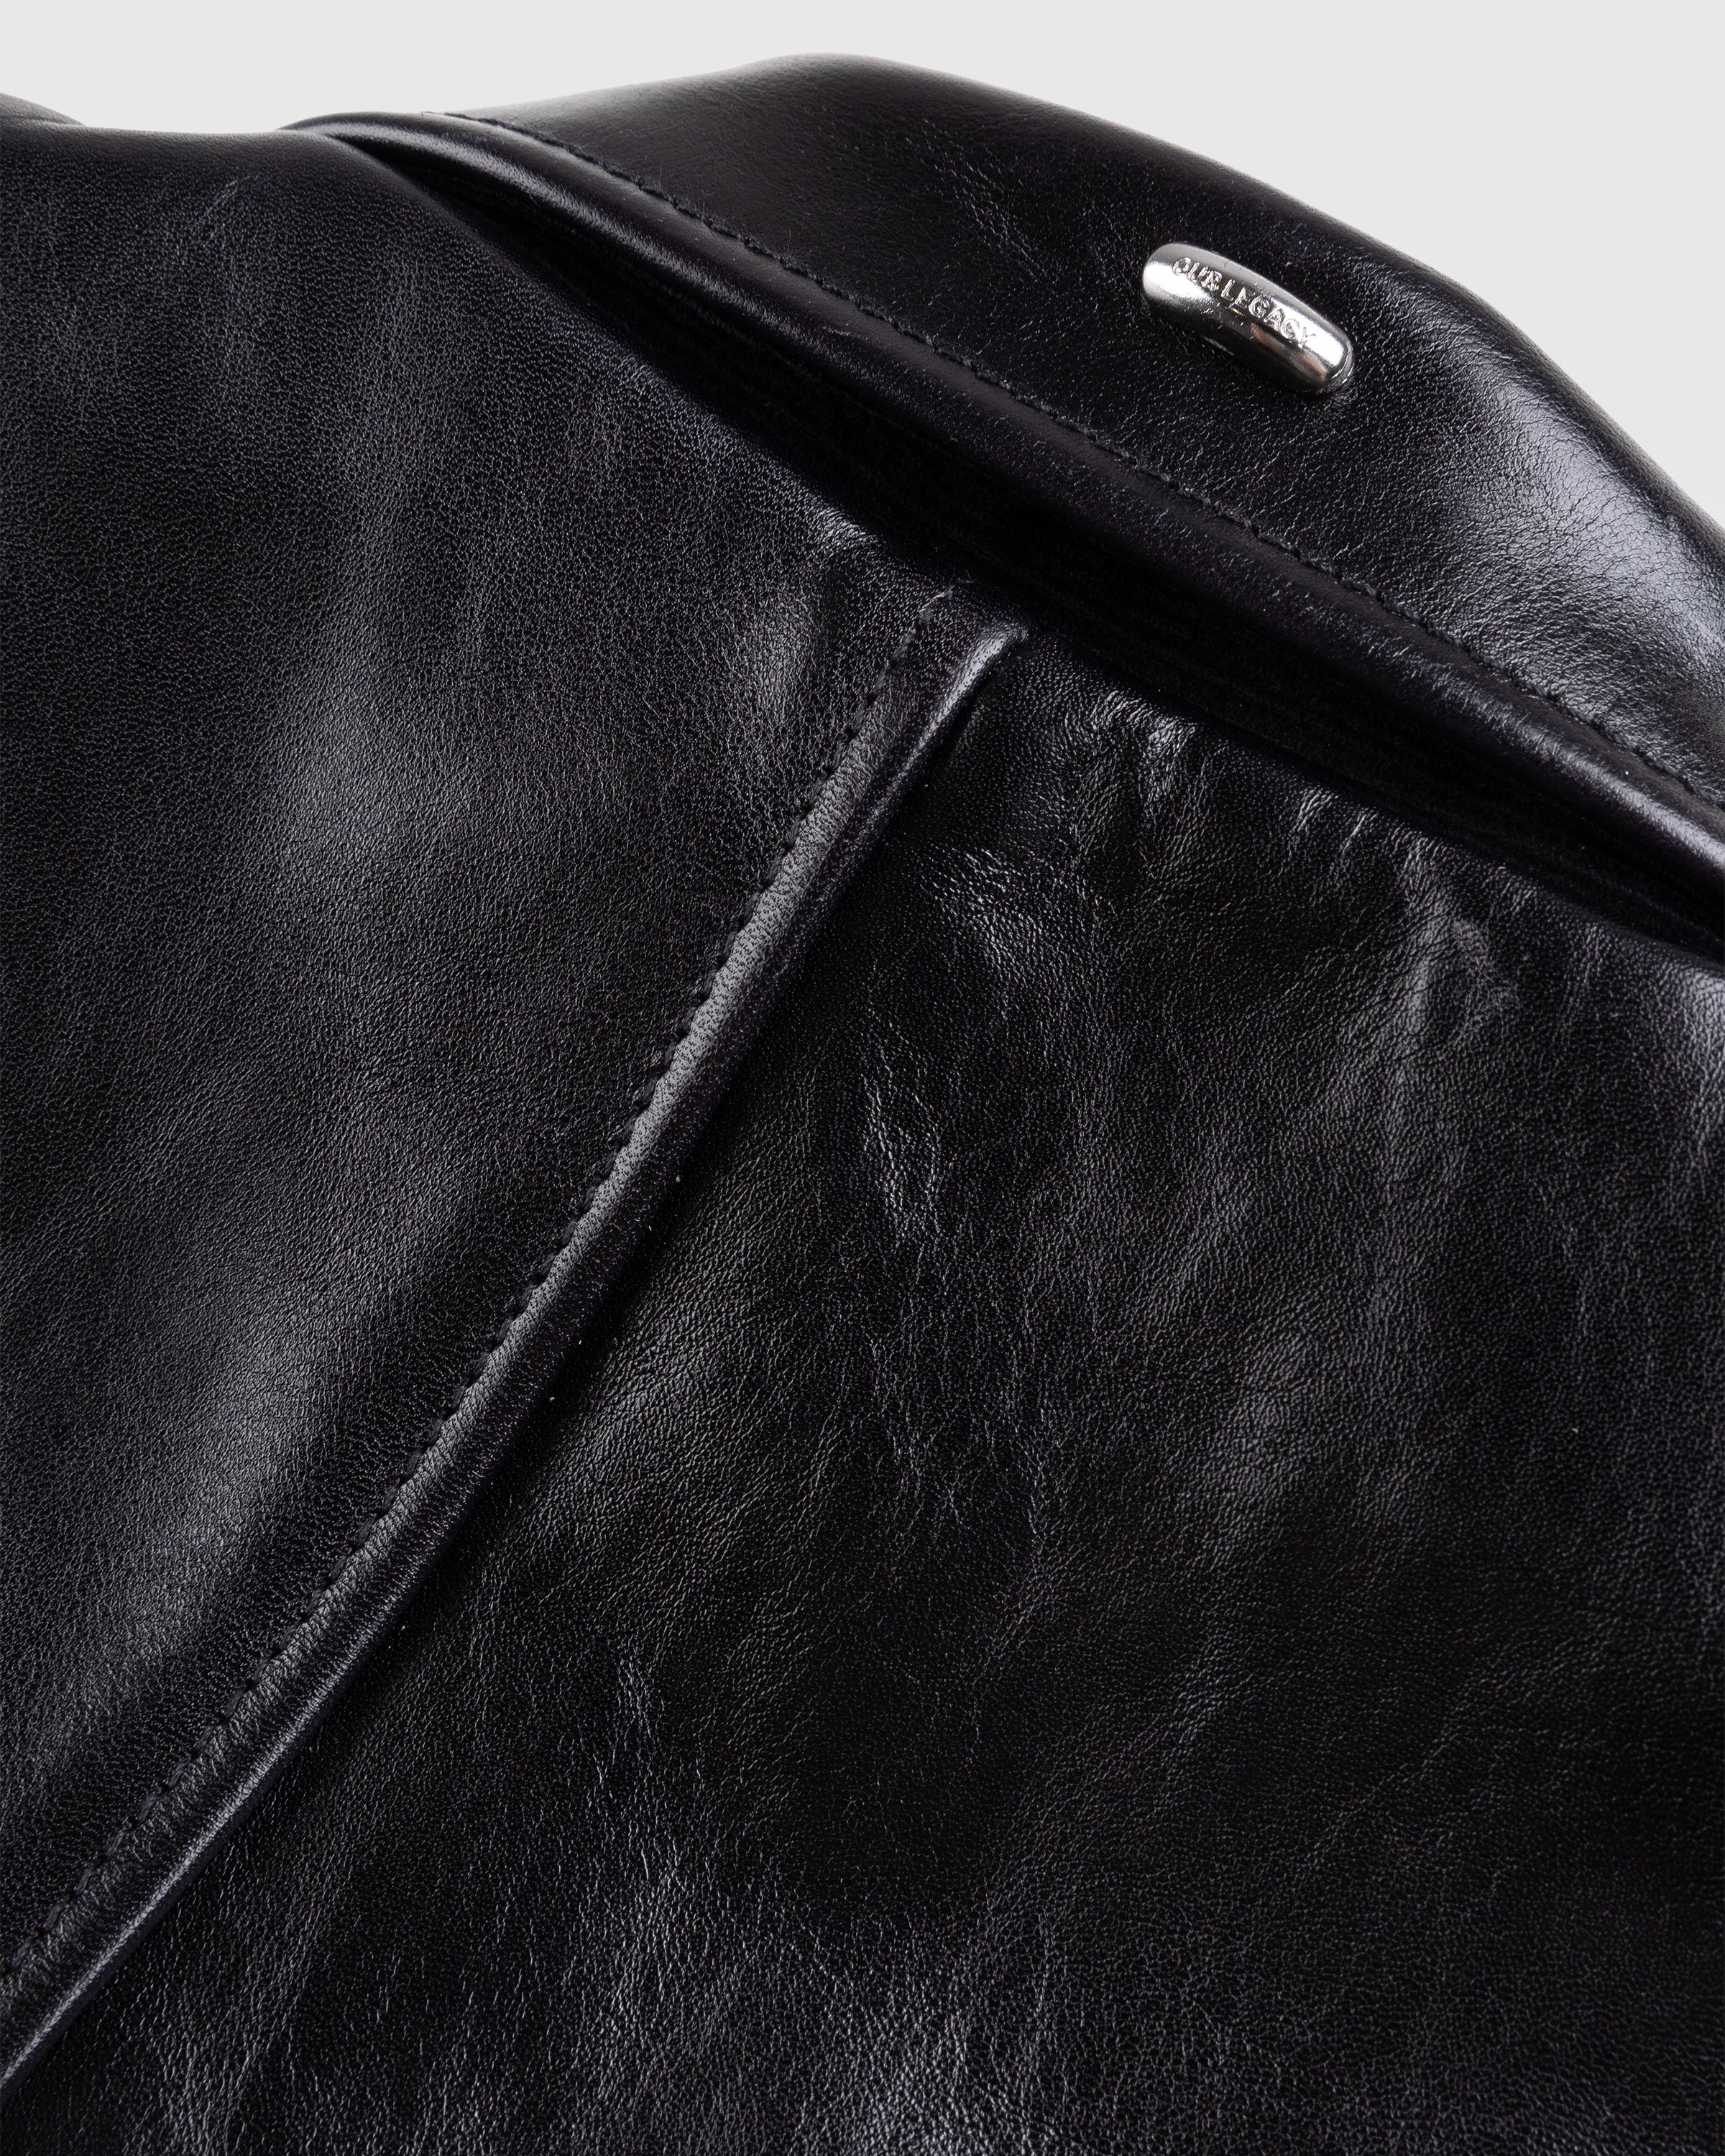 Our Legacy - MINI JACKET Leather Black - Clothing - Black - Image 7